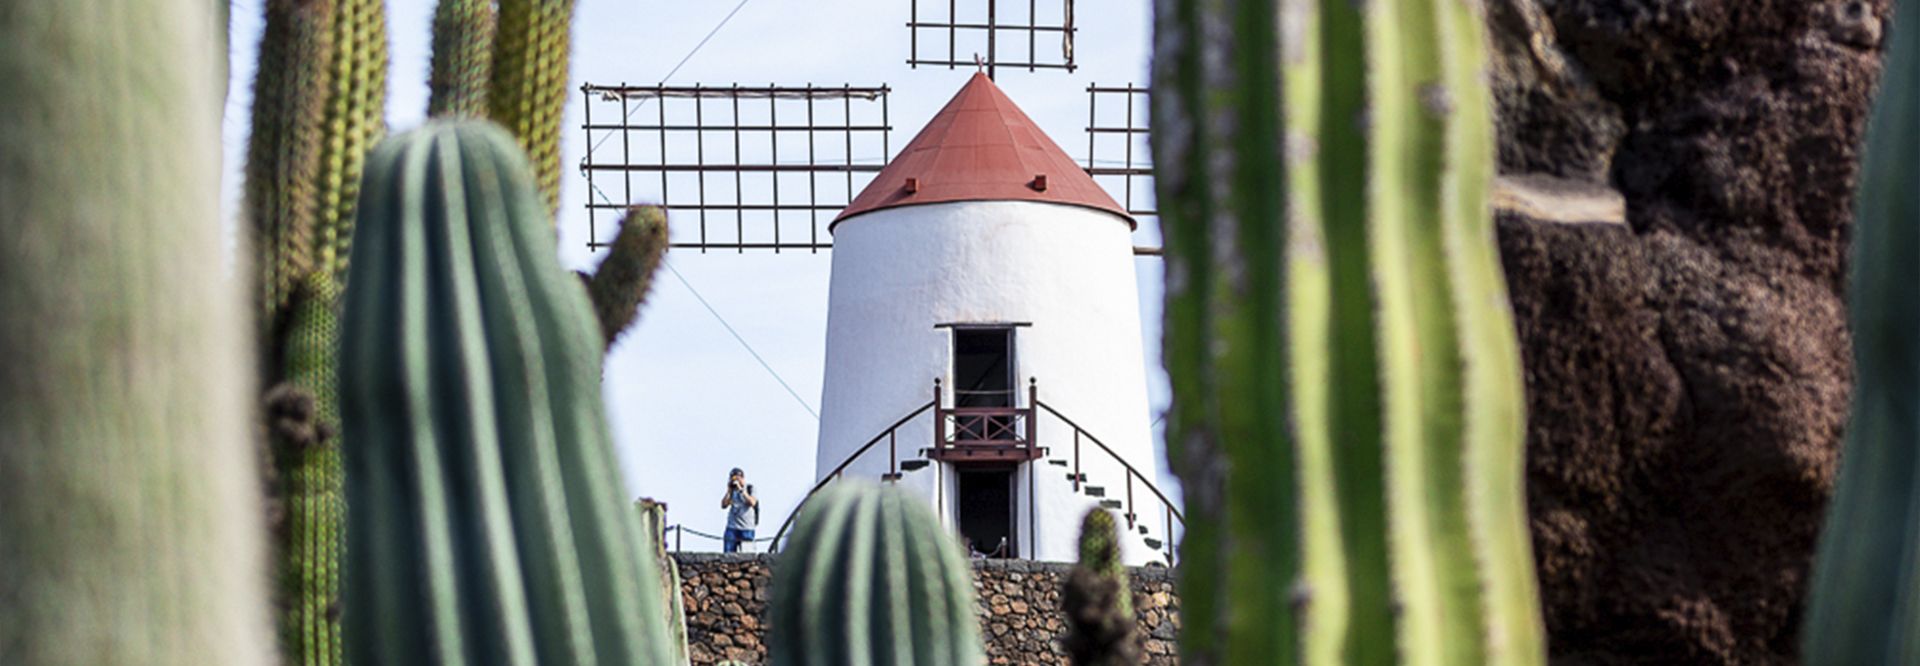 Visita al Jardín de Cactus. Guía de turismo y planazos en Lanzarote.